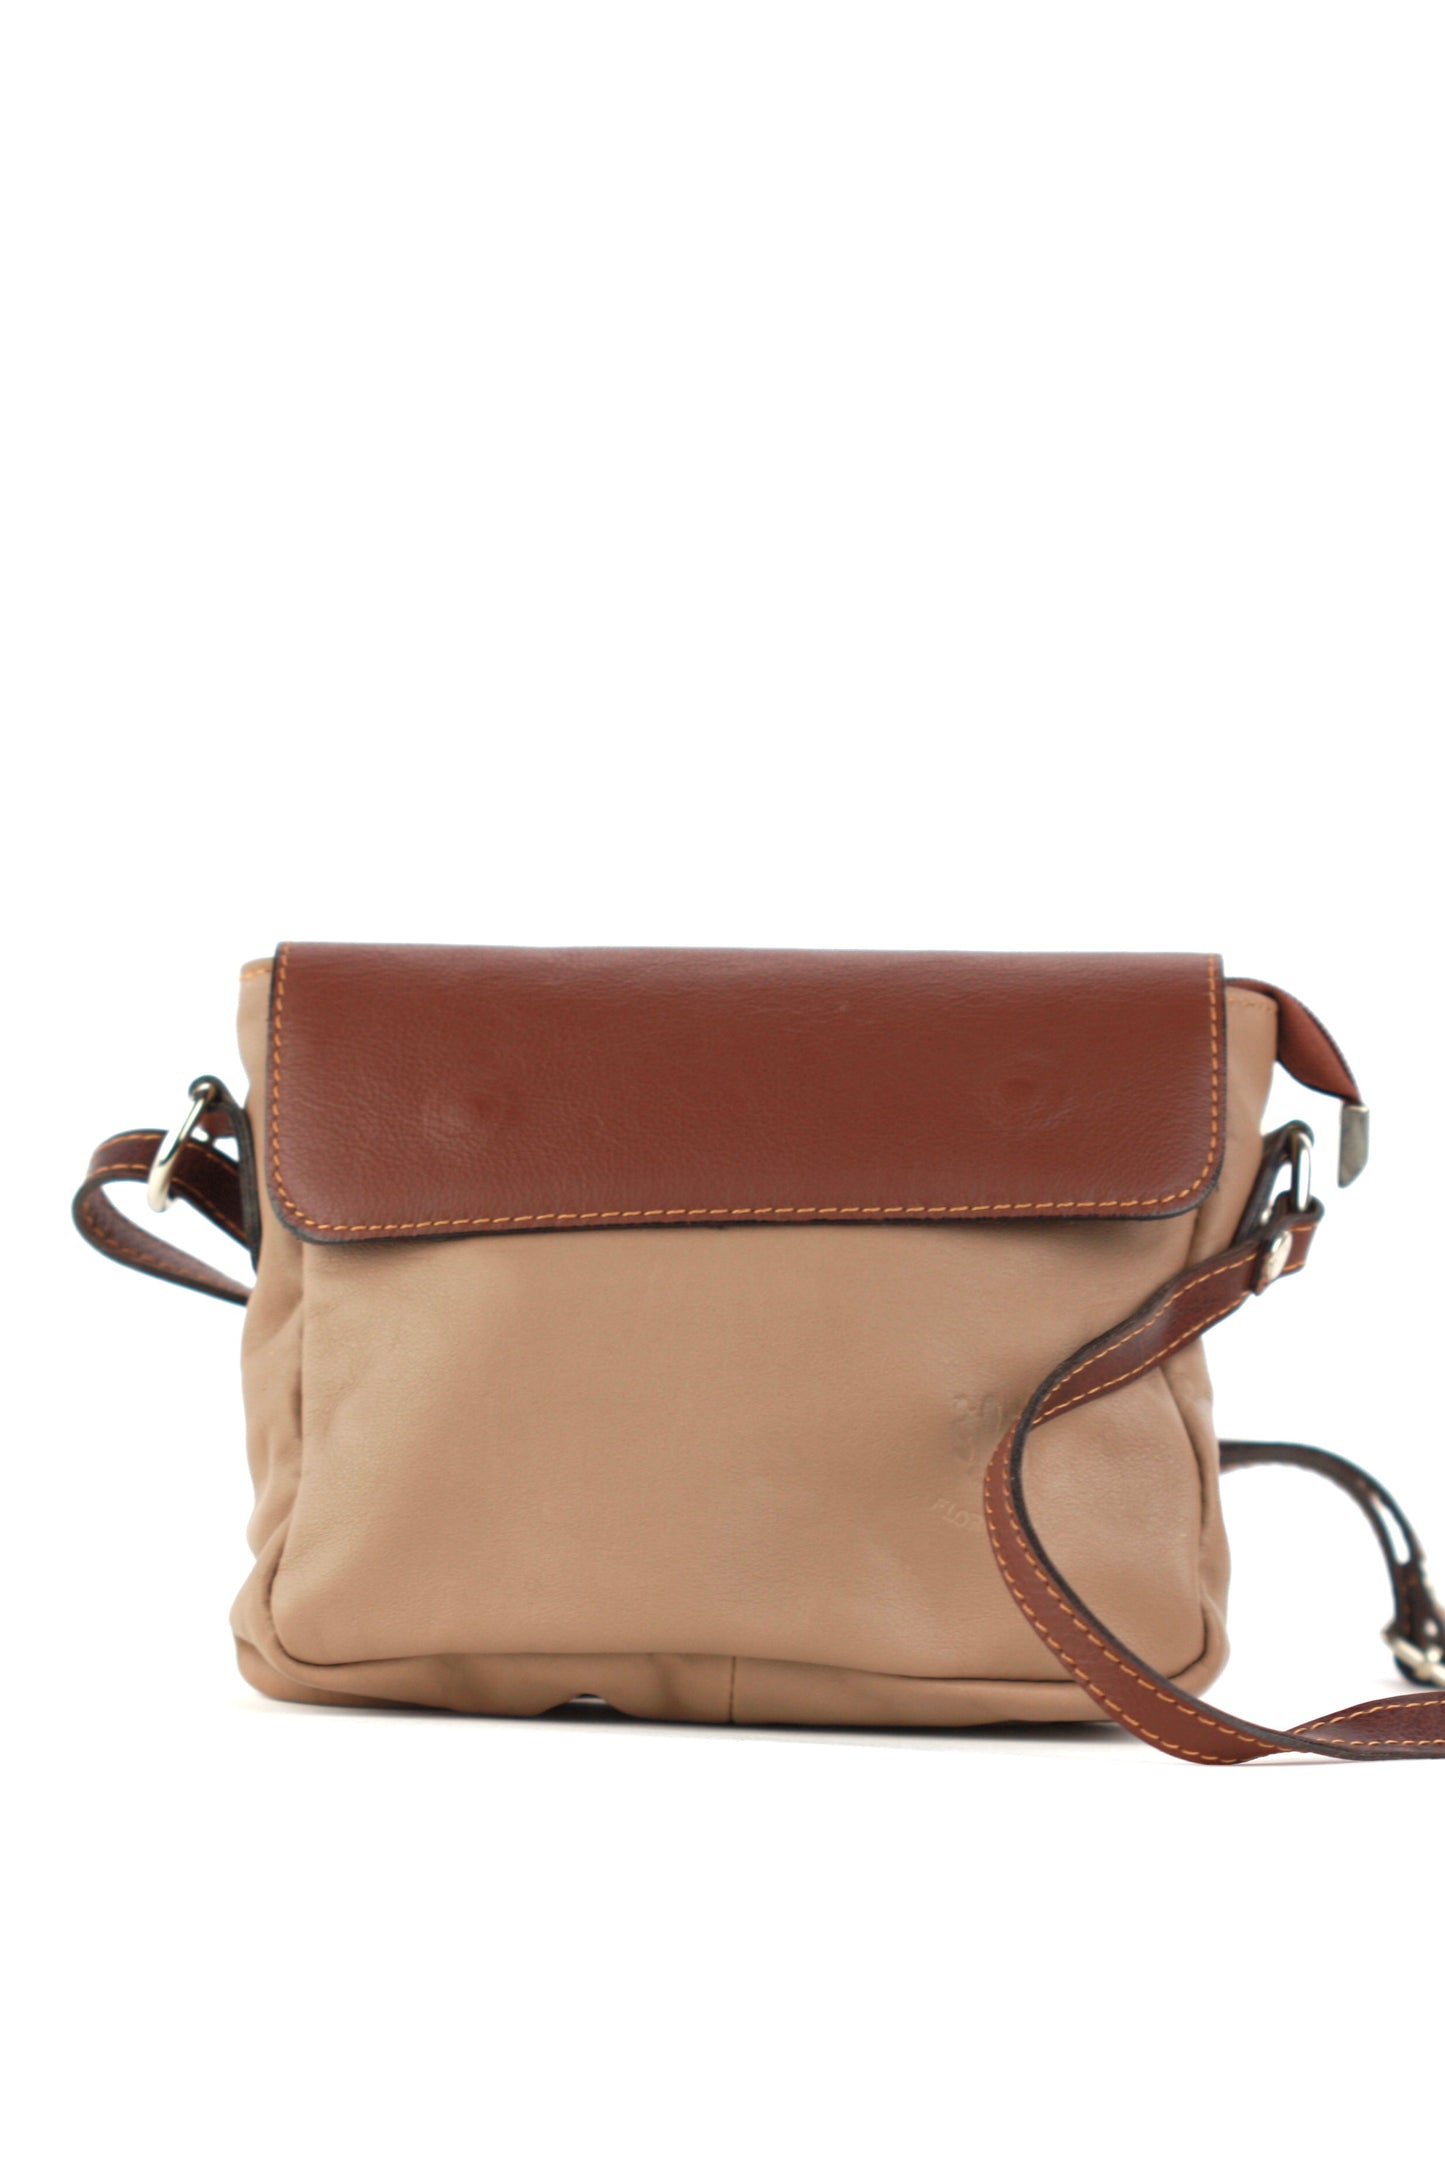 Penelope handbag in tan and brown